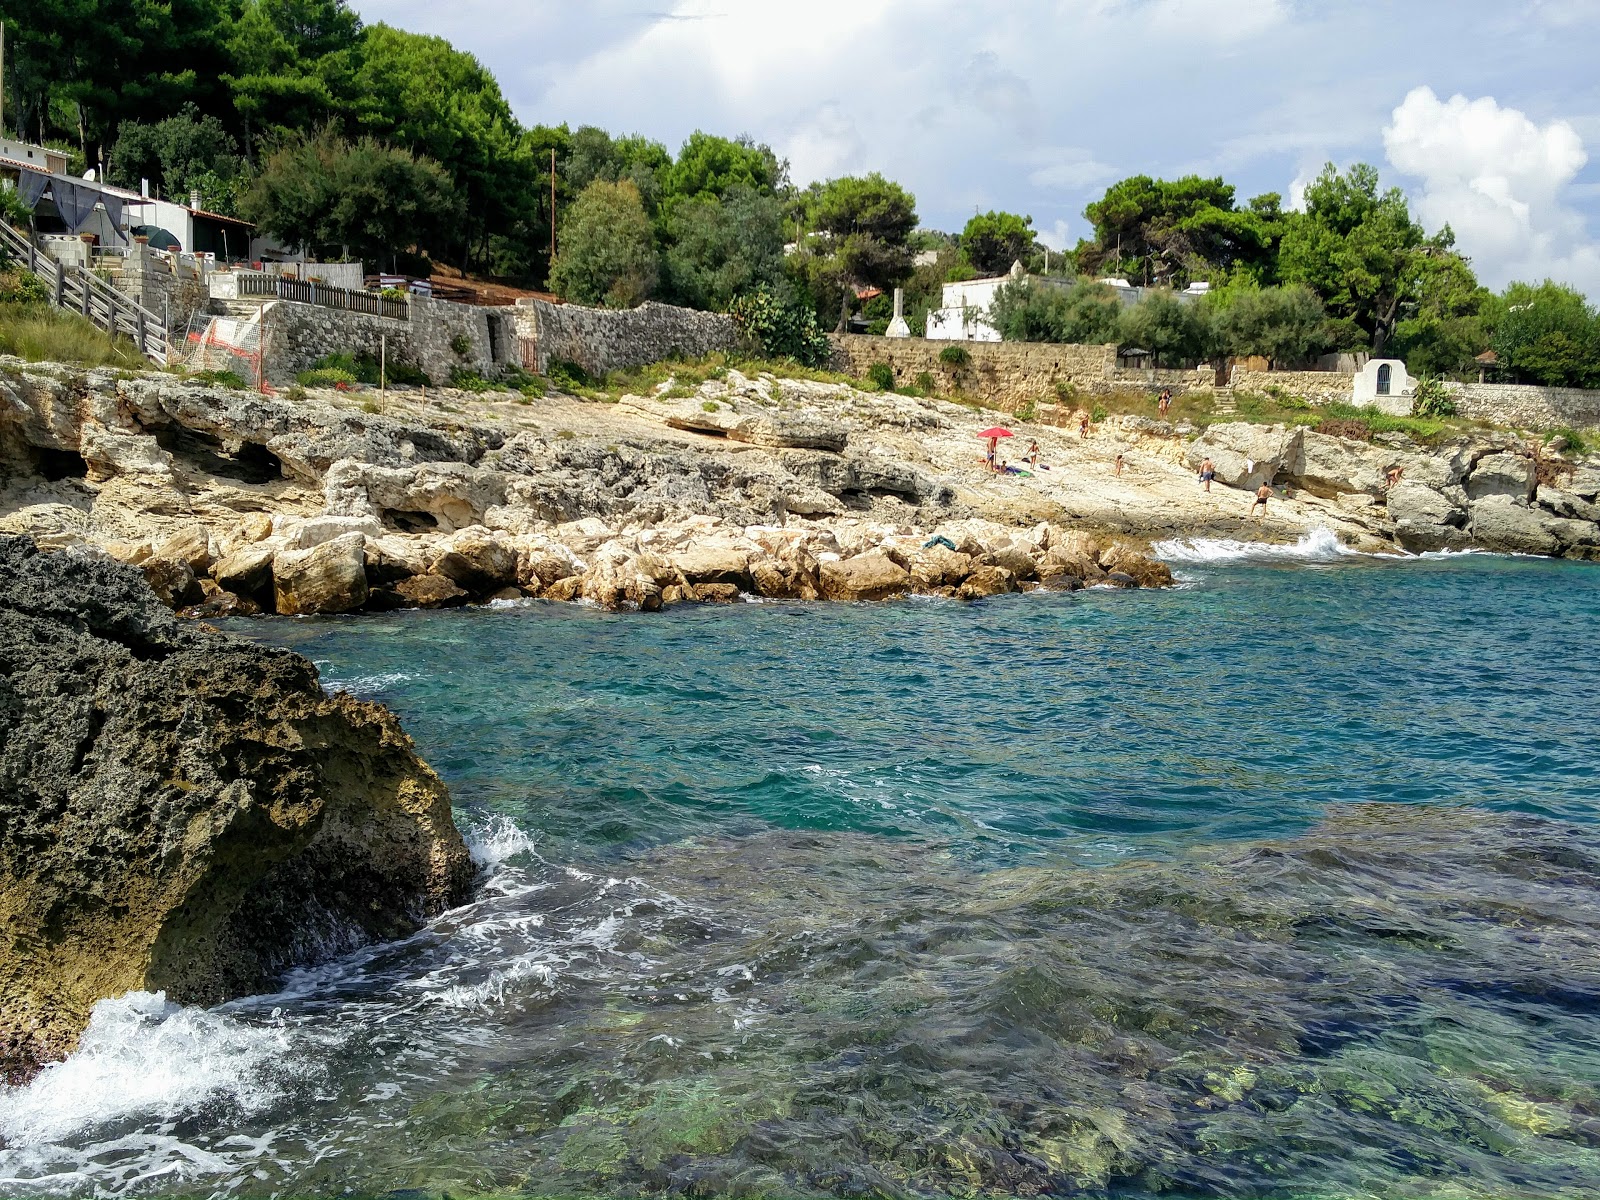 Foto de Spiaggia di Chianca Liscia localizado em área natural